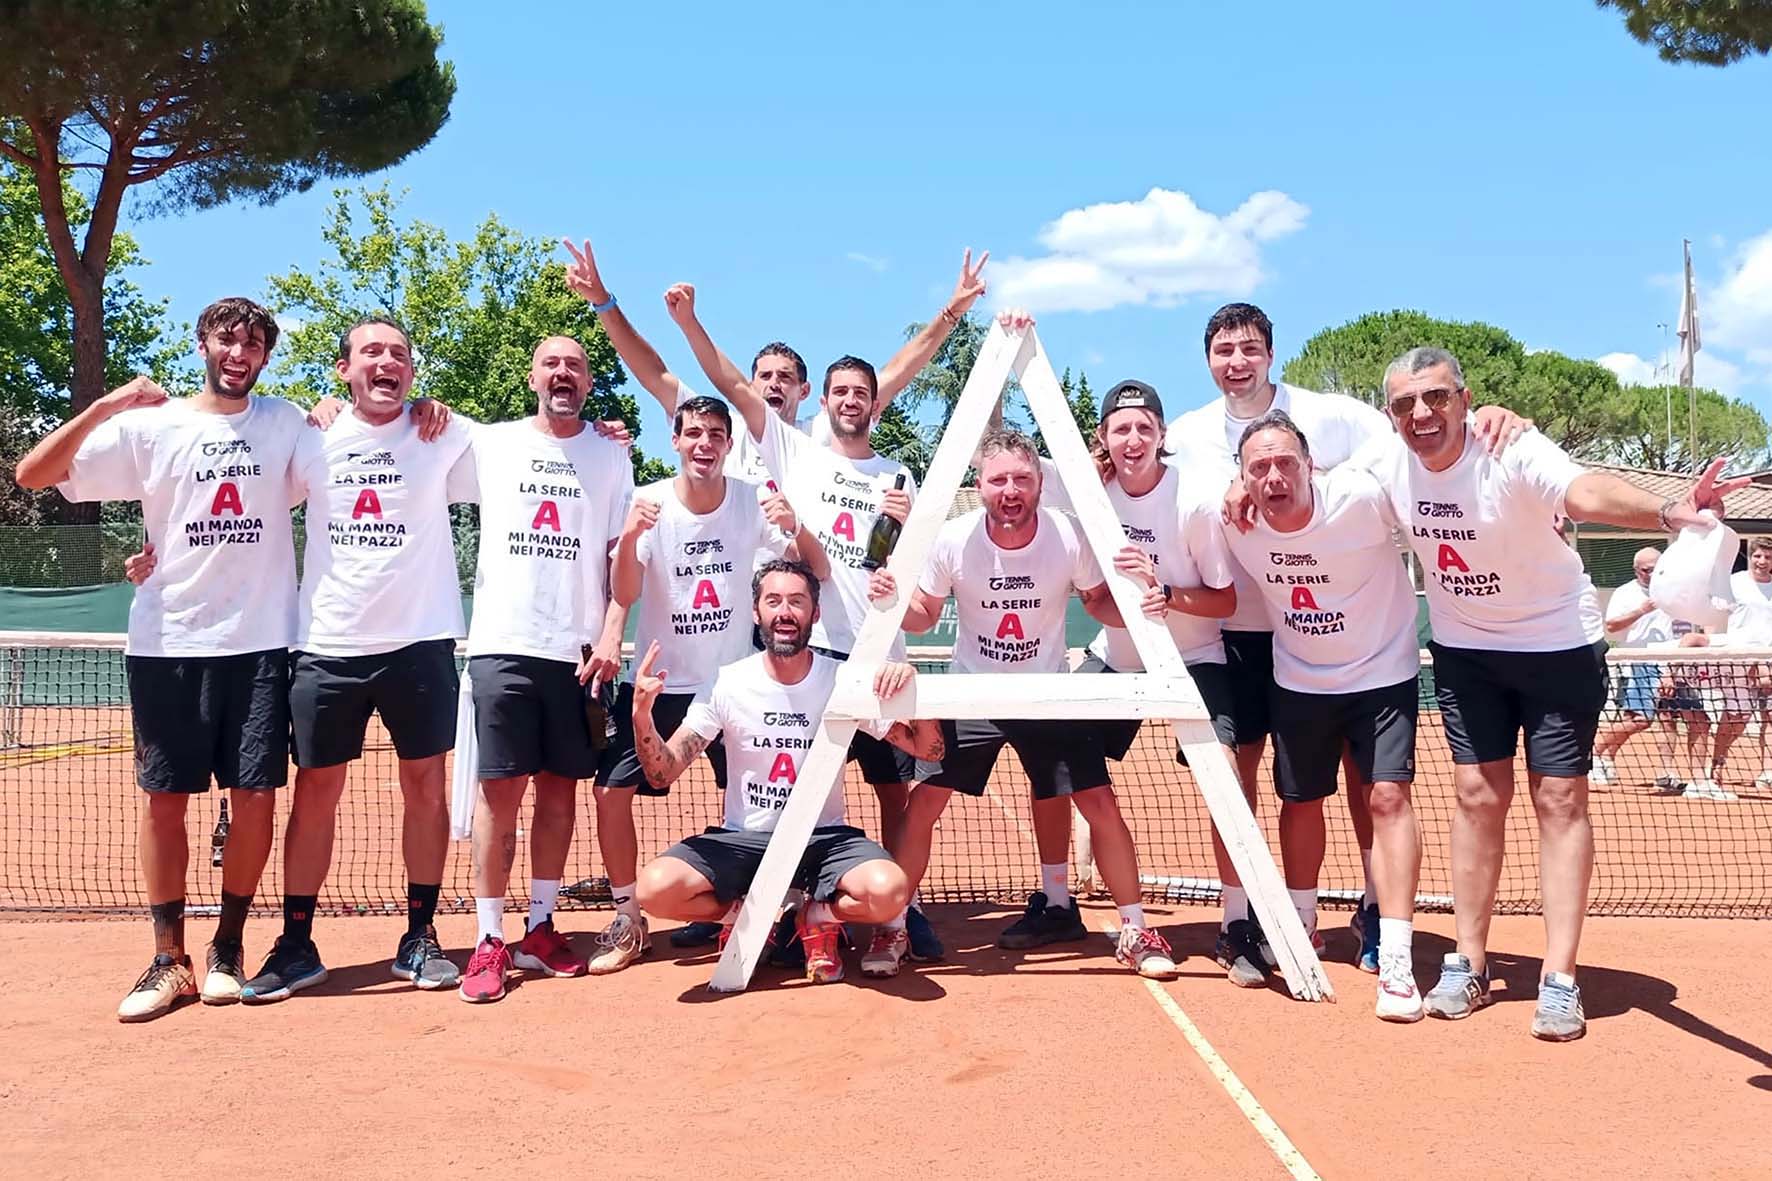 Il Tennis Giotto è il quarto miglior circolo giovanile italiano